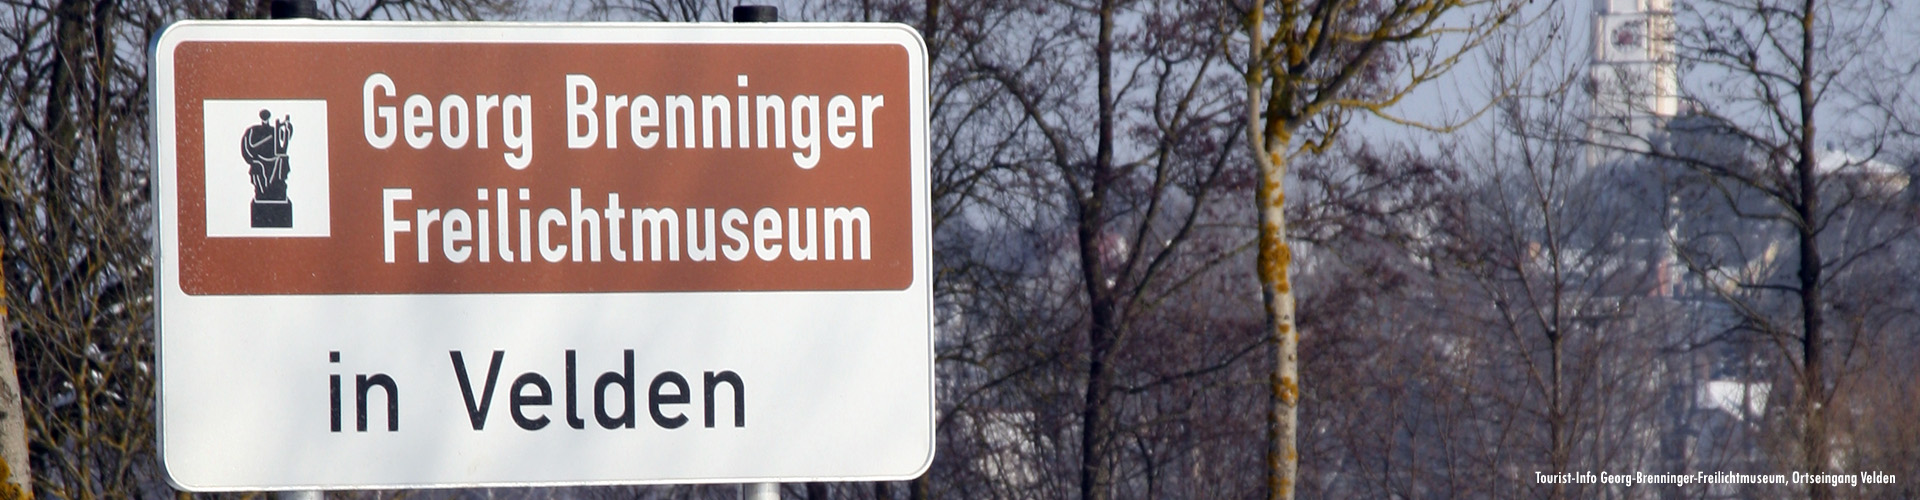 Georg-Brenninger-Freilichtmuseum in Velden